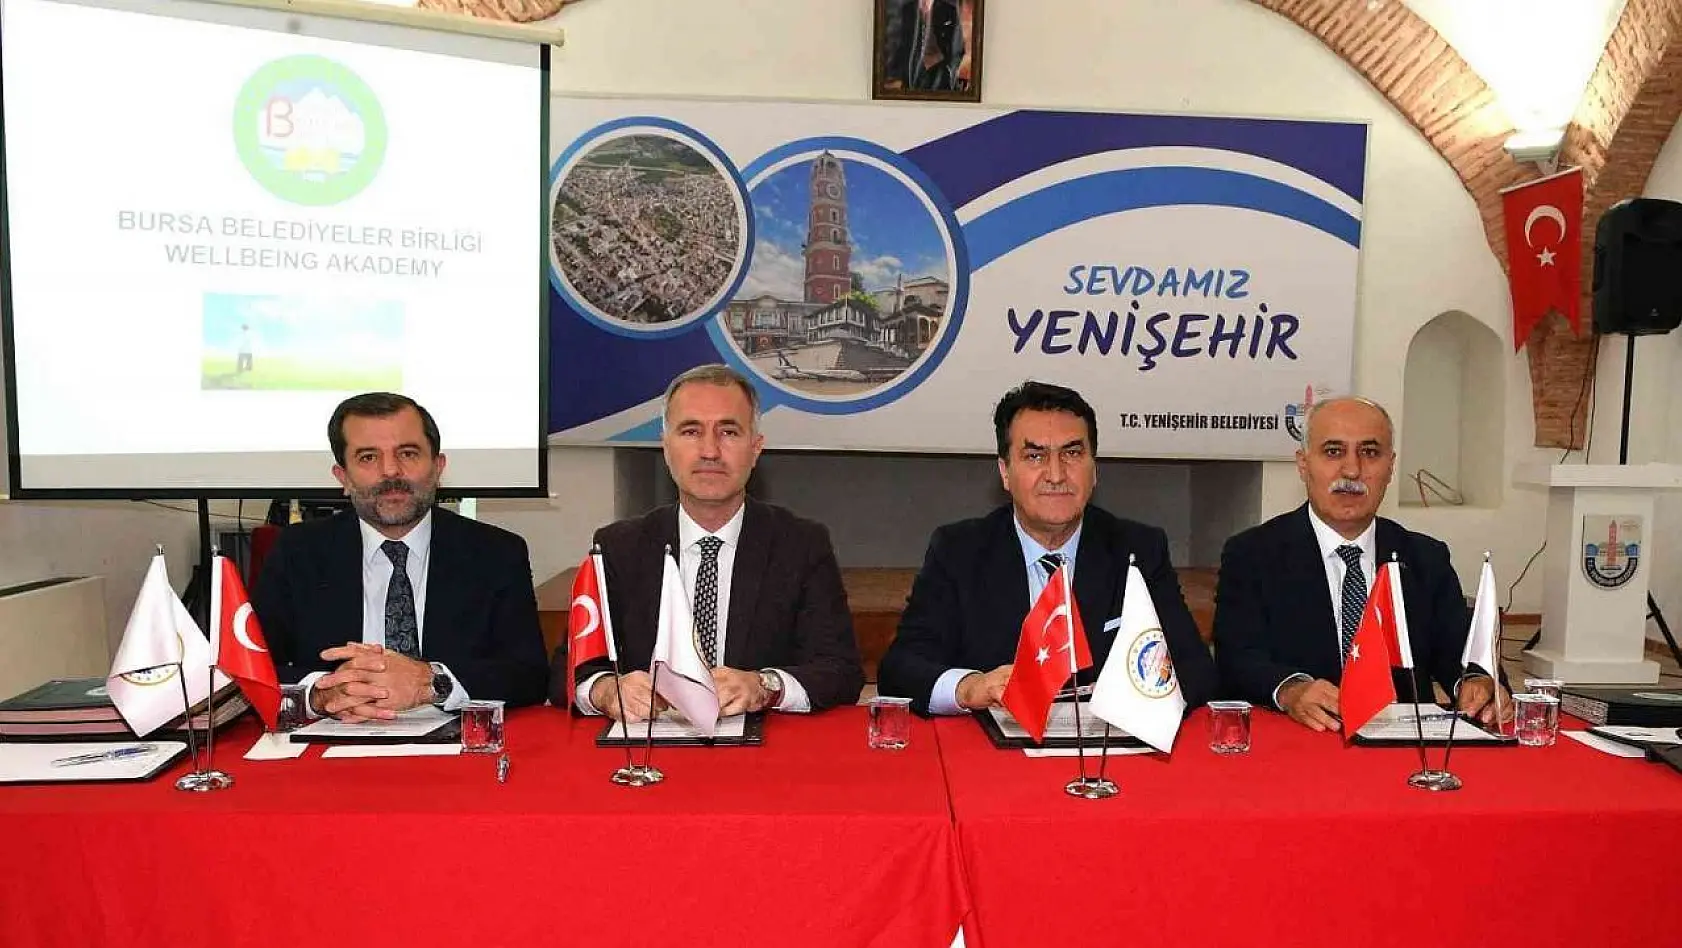 Bursa Belediyeler Birliği Yenişehir'de toplandı